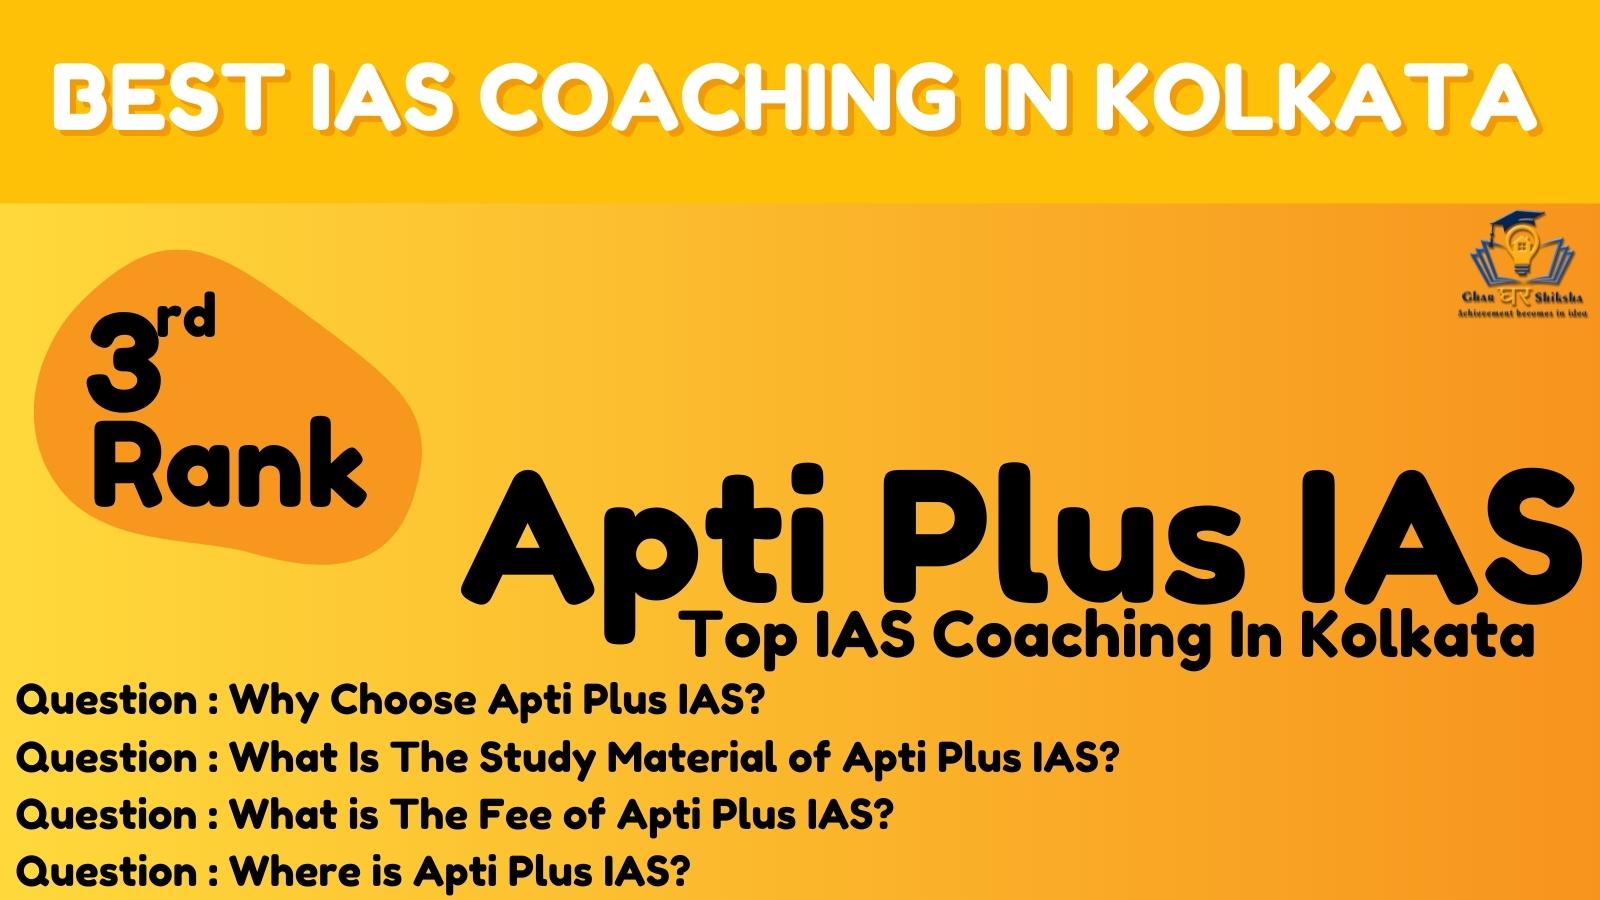 Apti Plus IAS | Best IAS Coaching In Kolkata